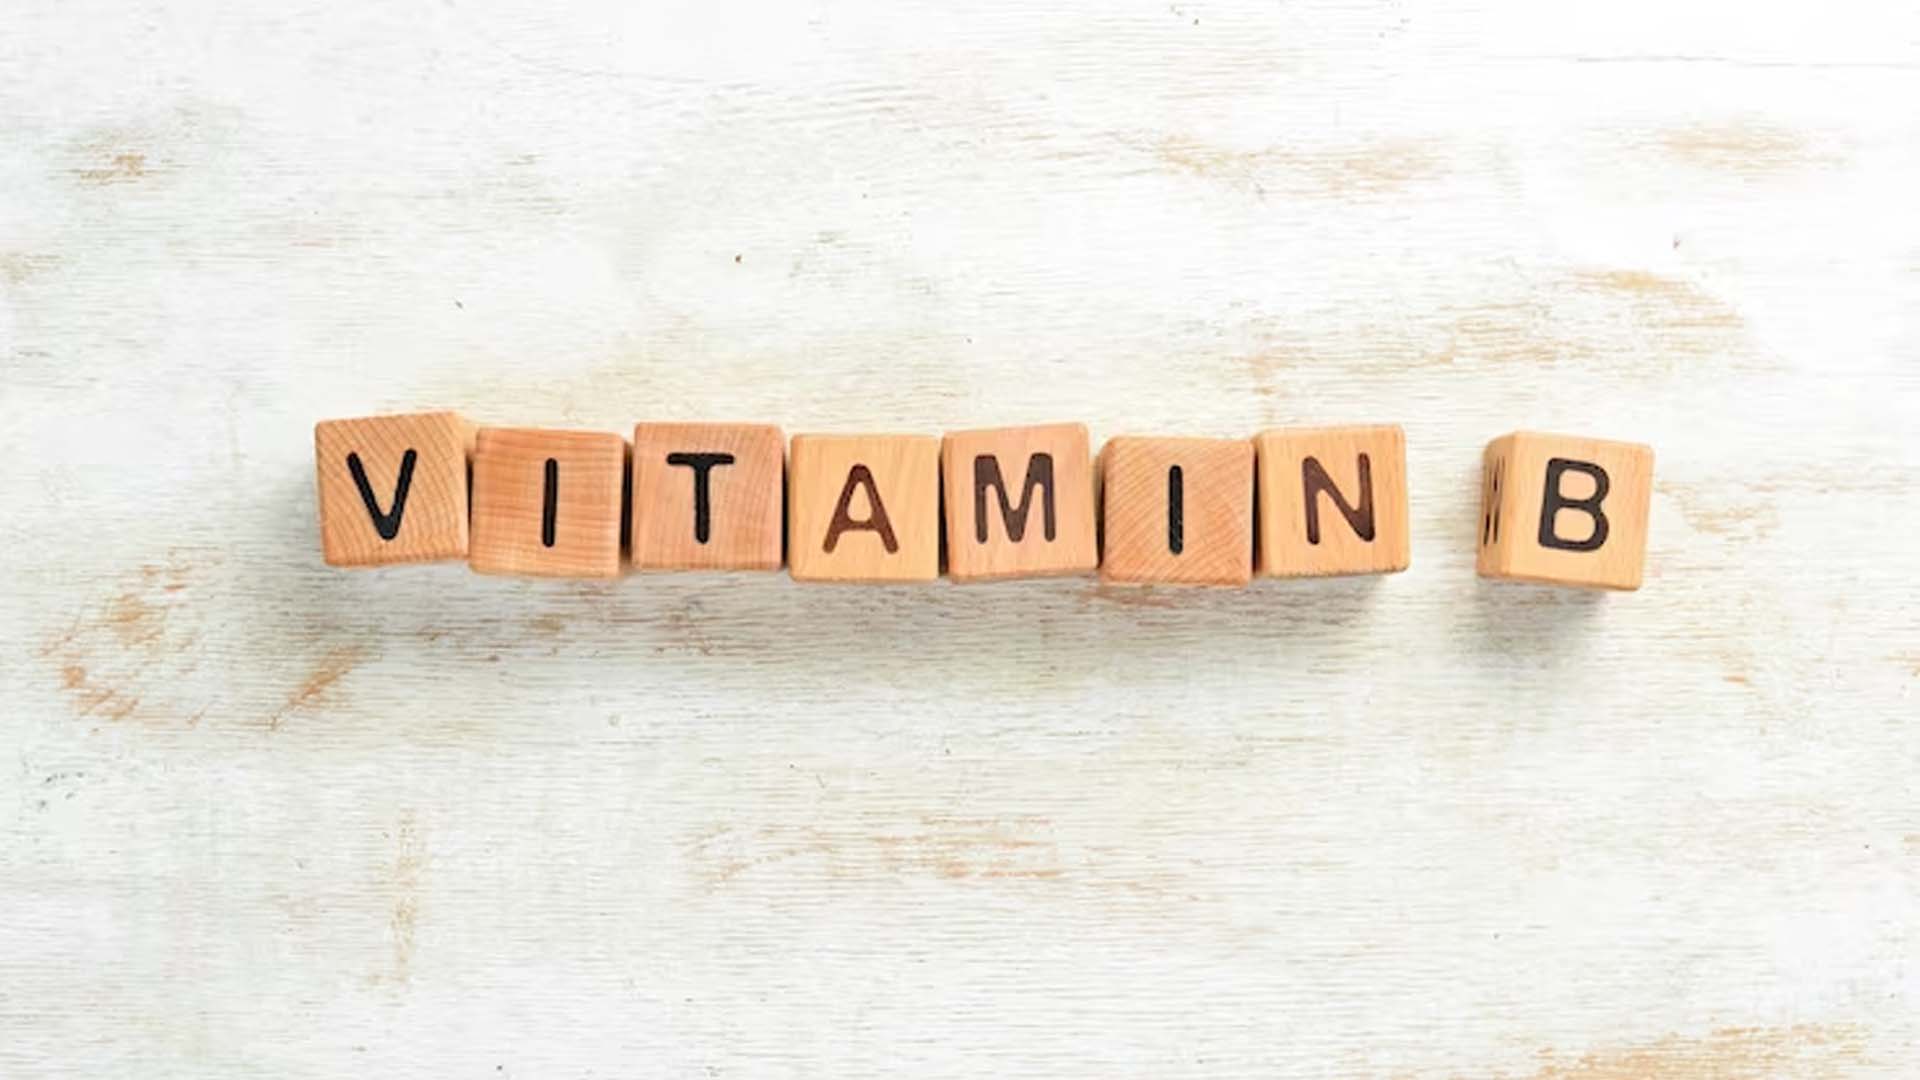 B Vitamin